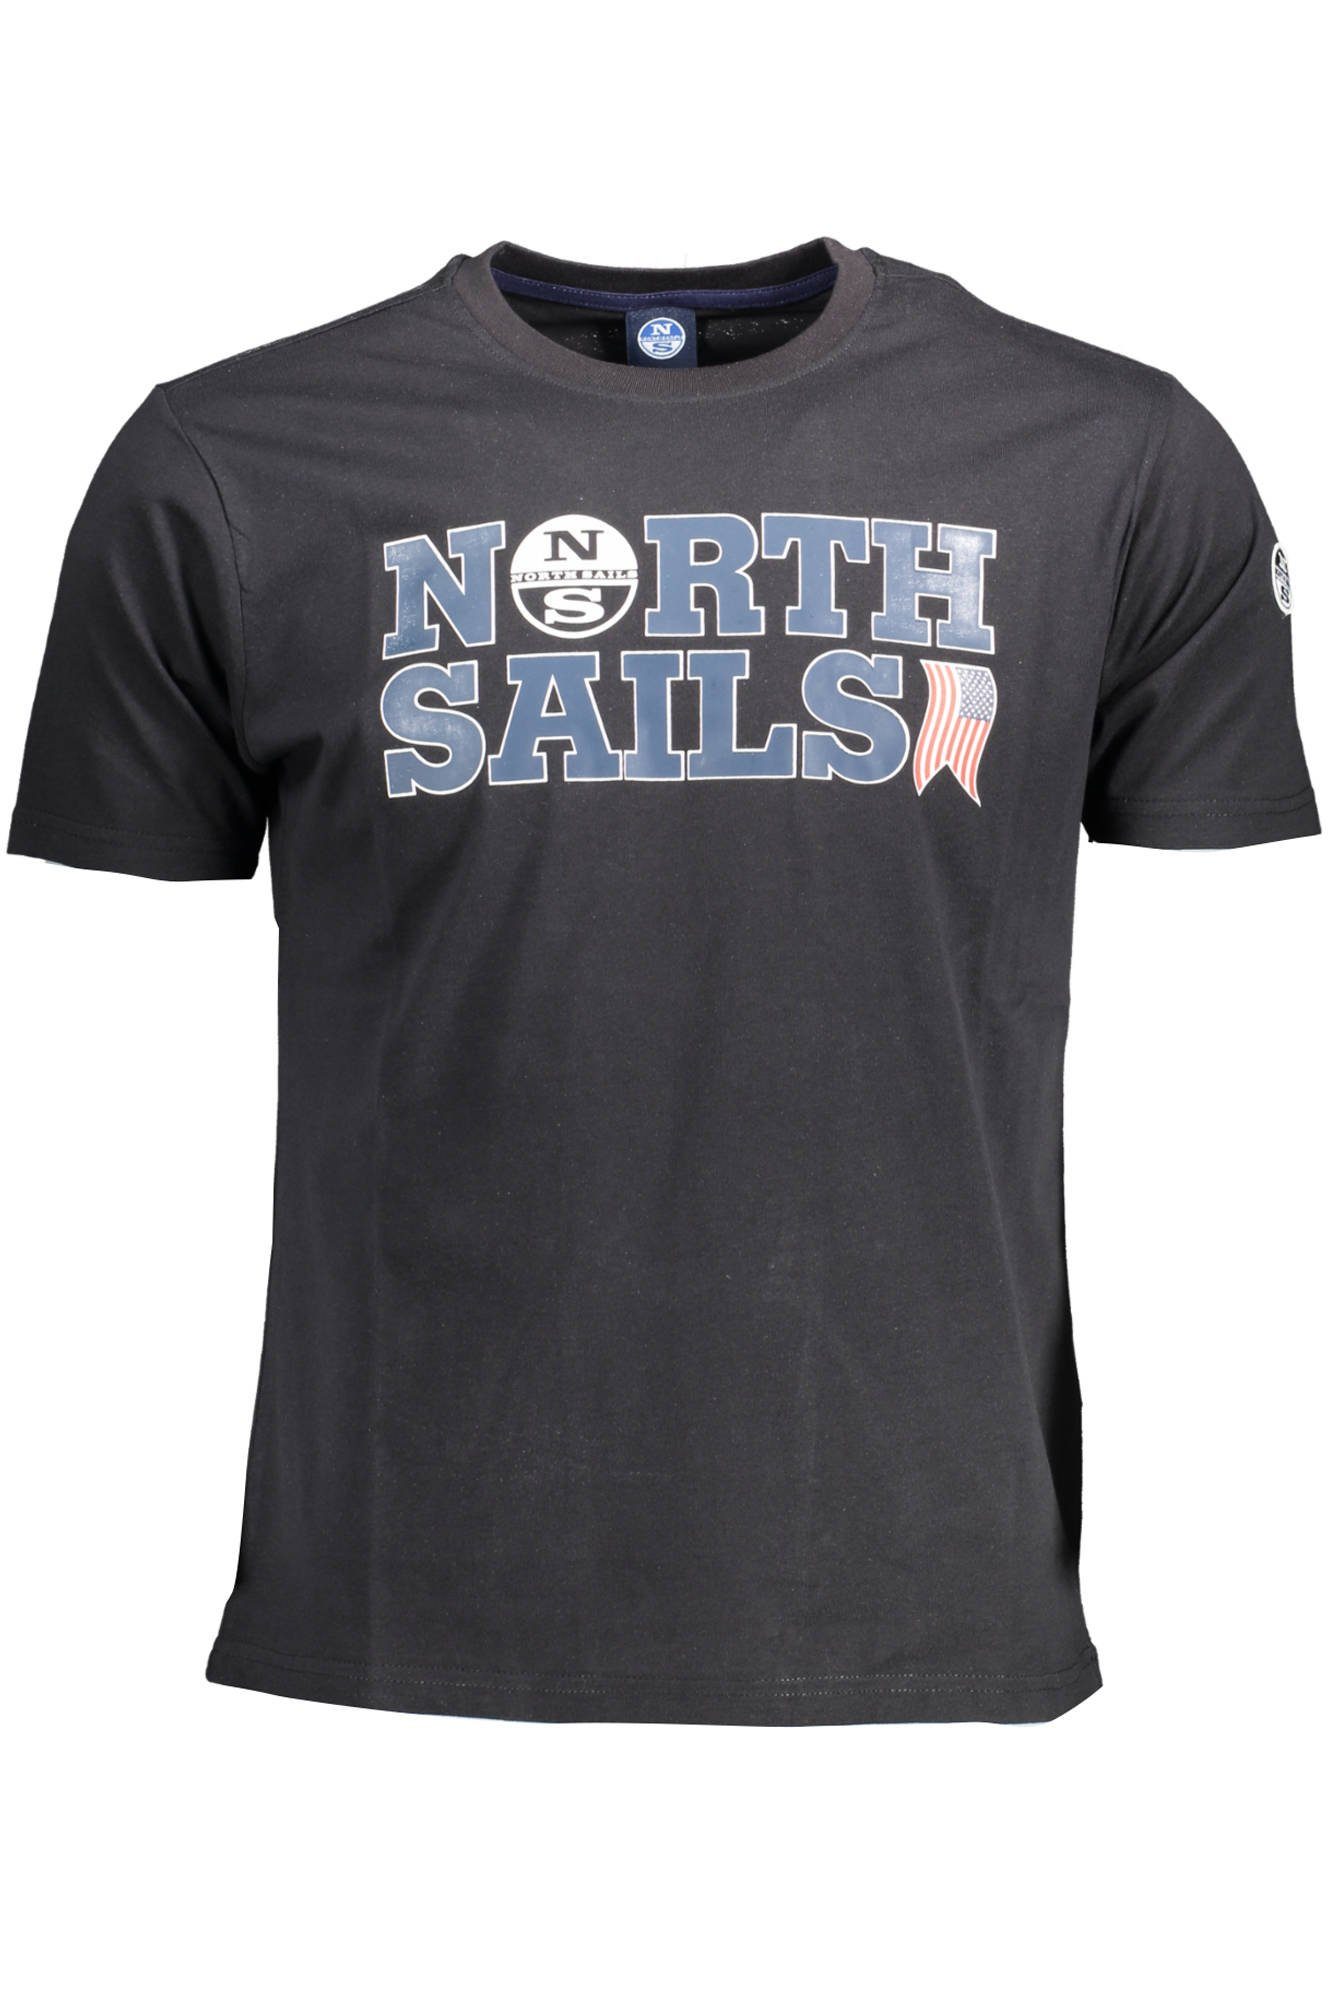 North T-Shirt kurzarm (0999) Herren Sails mit Rundhalsshirt schwarz Rundhalsausschnitt, Sweatshirt Sails North